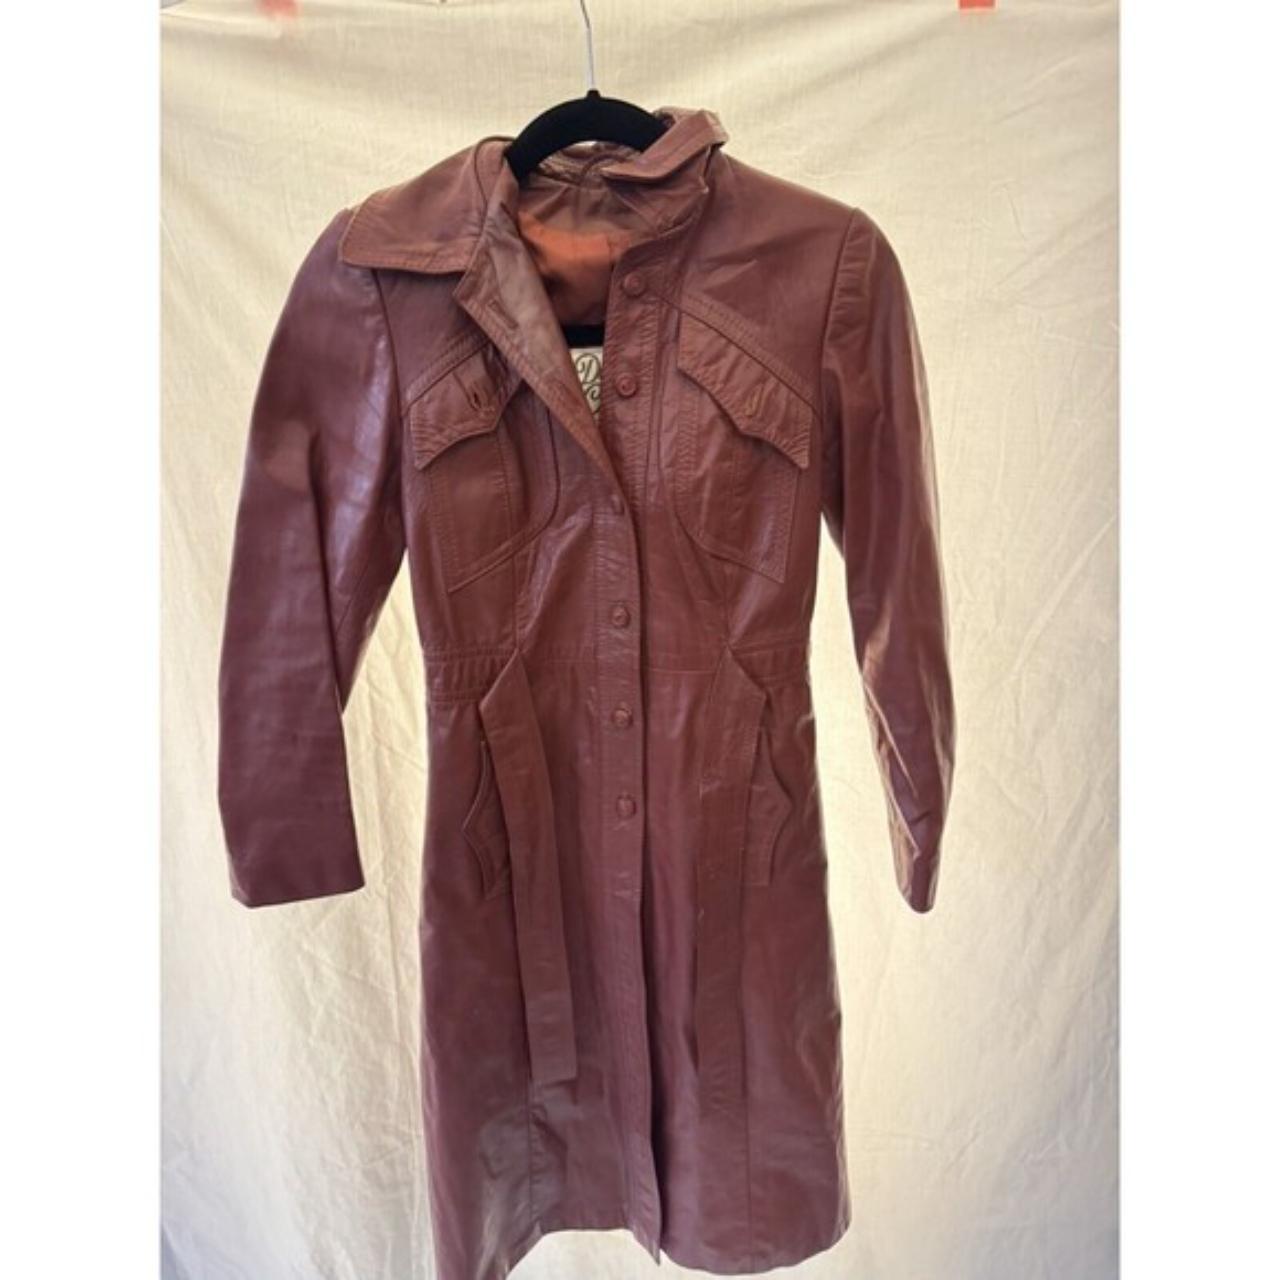 Vintage Genuine Leather Long Jacket Belted Button... - Depop